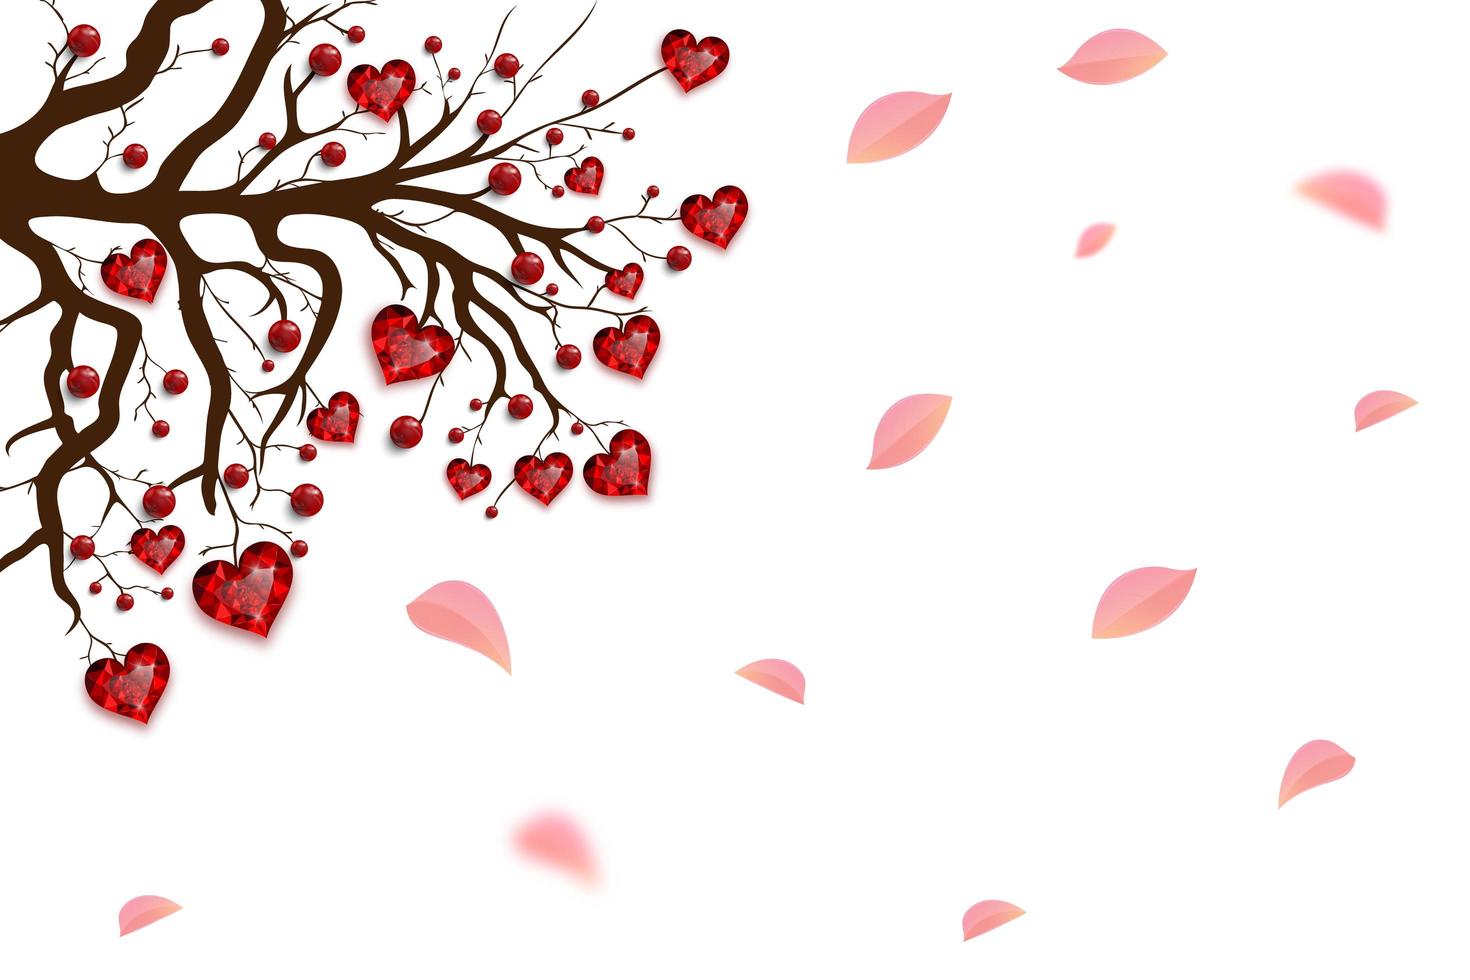 Feliz día de San Valentín. árbol decorado con corazones rojos y perlas. joya de rubí. tarjeta de san valentin. vector